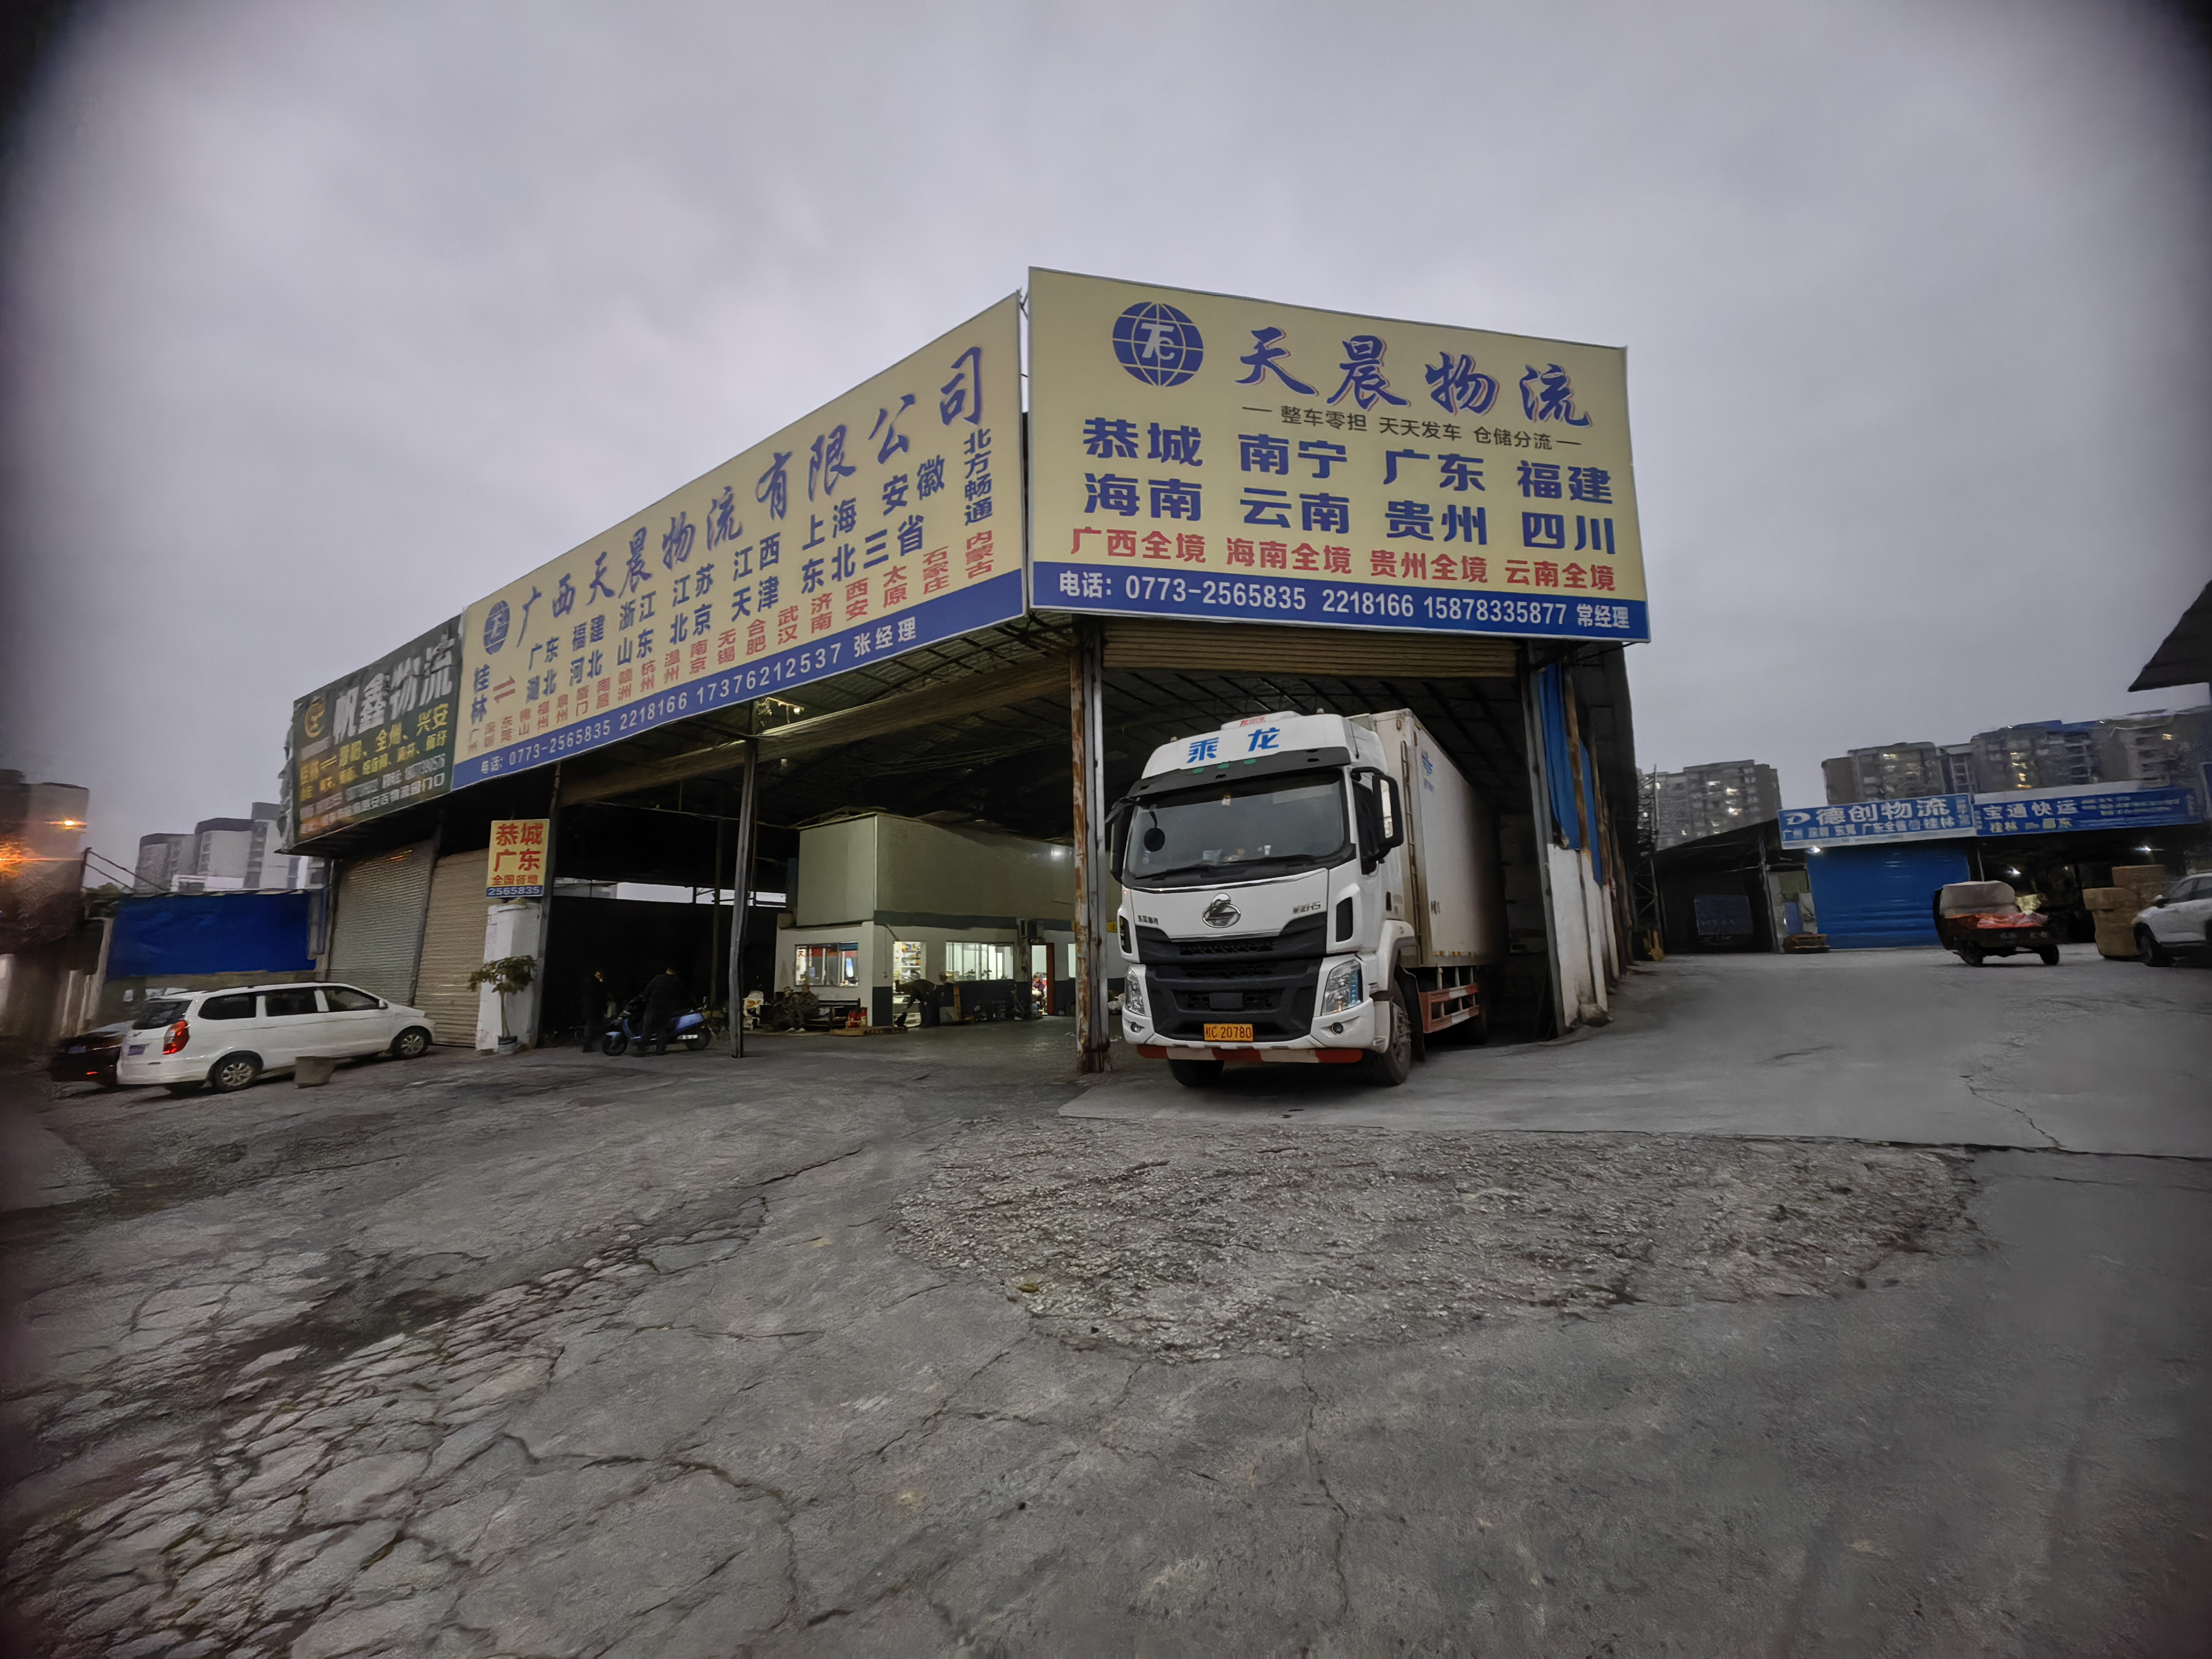 广西桂林到贵州冷藏品物流 大件运输  轿车托运 整车零担货运全国各地   广西至贵州公路专线